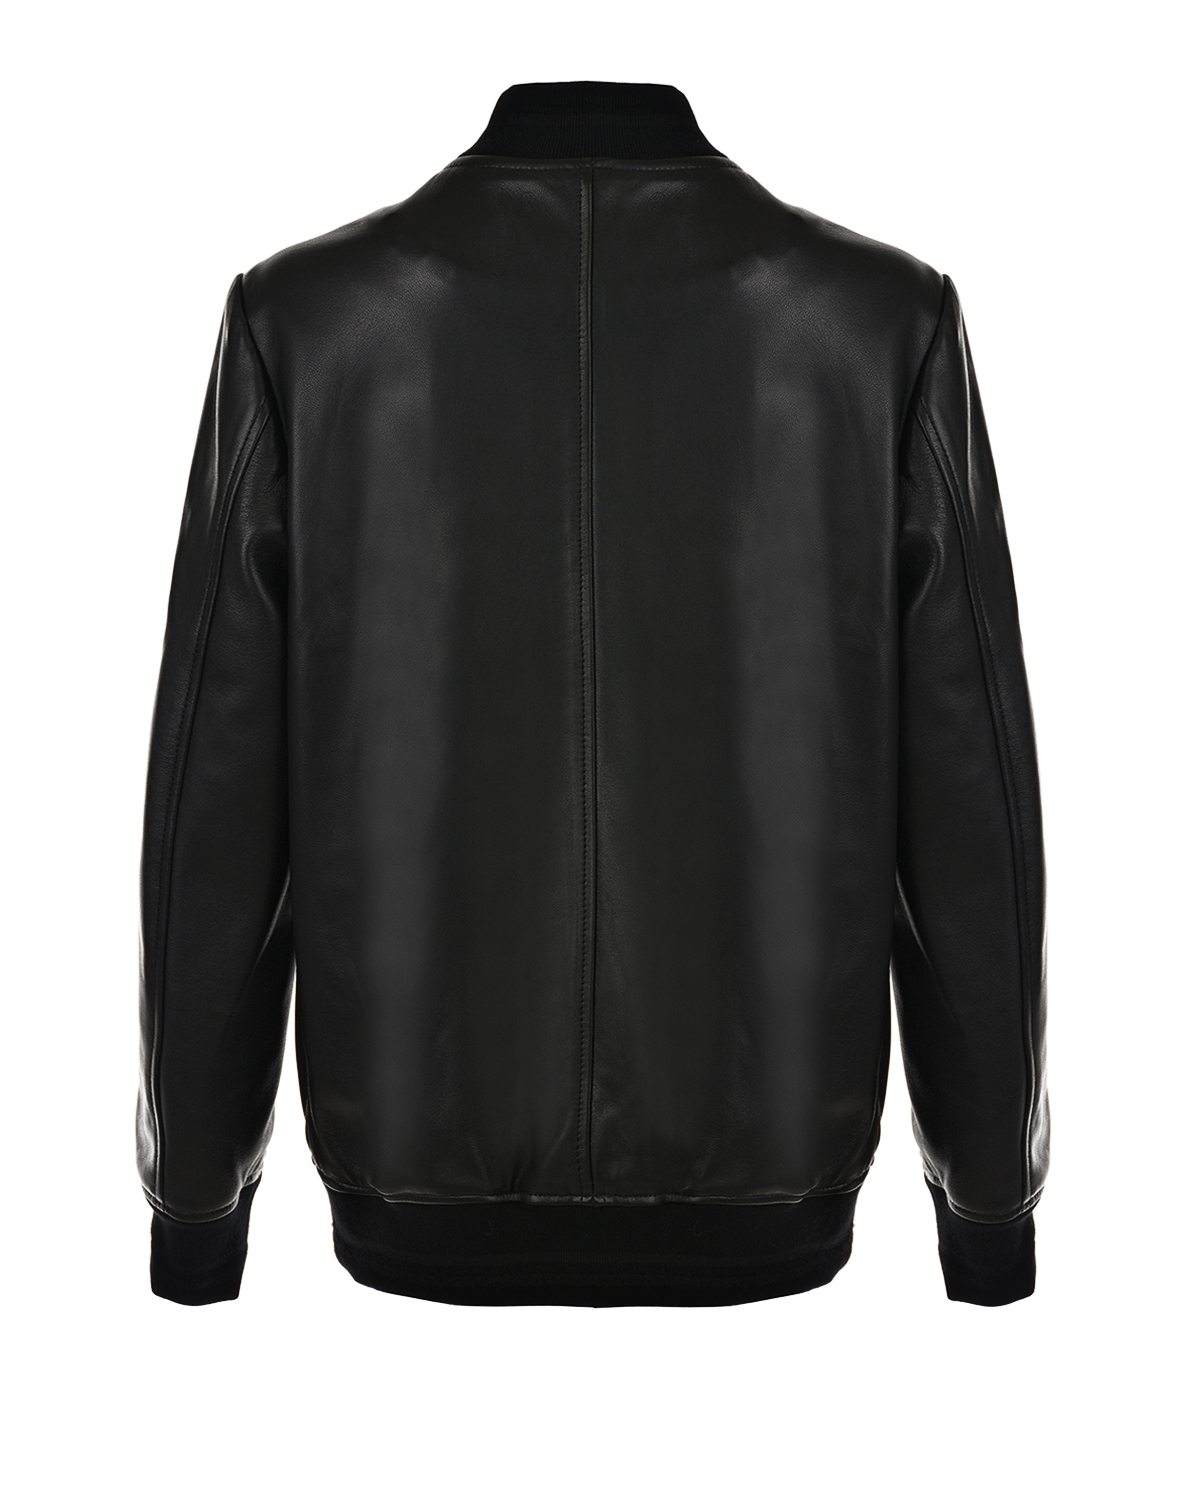 Кожаная куртка с патчем "Made in Italy" Dolce&Gabbana детская, размер 128, цвет черный - фото 2